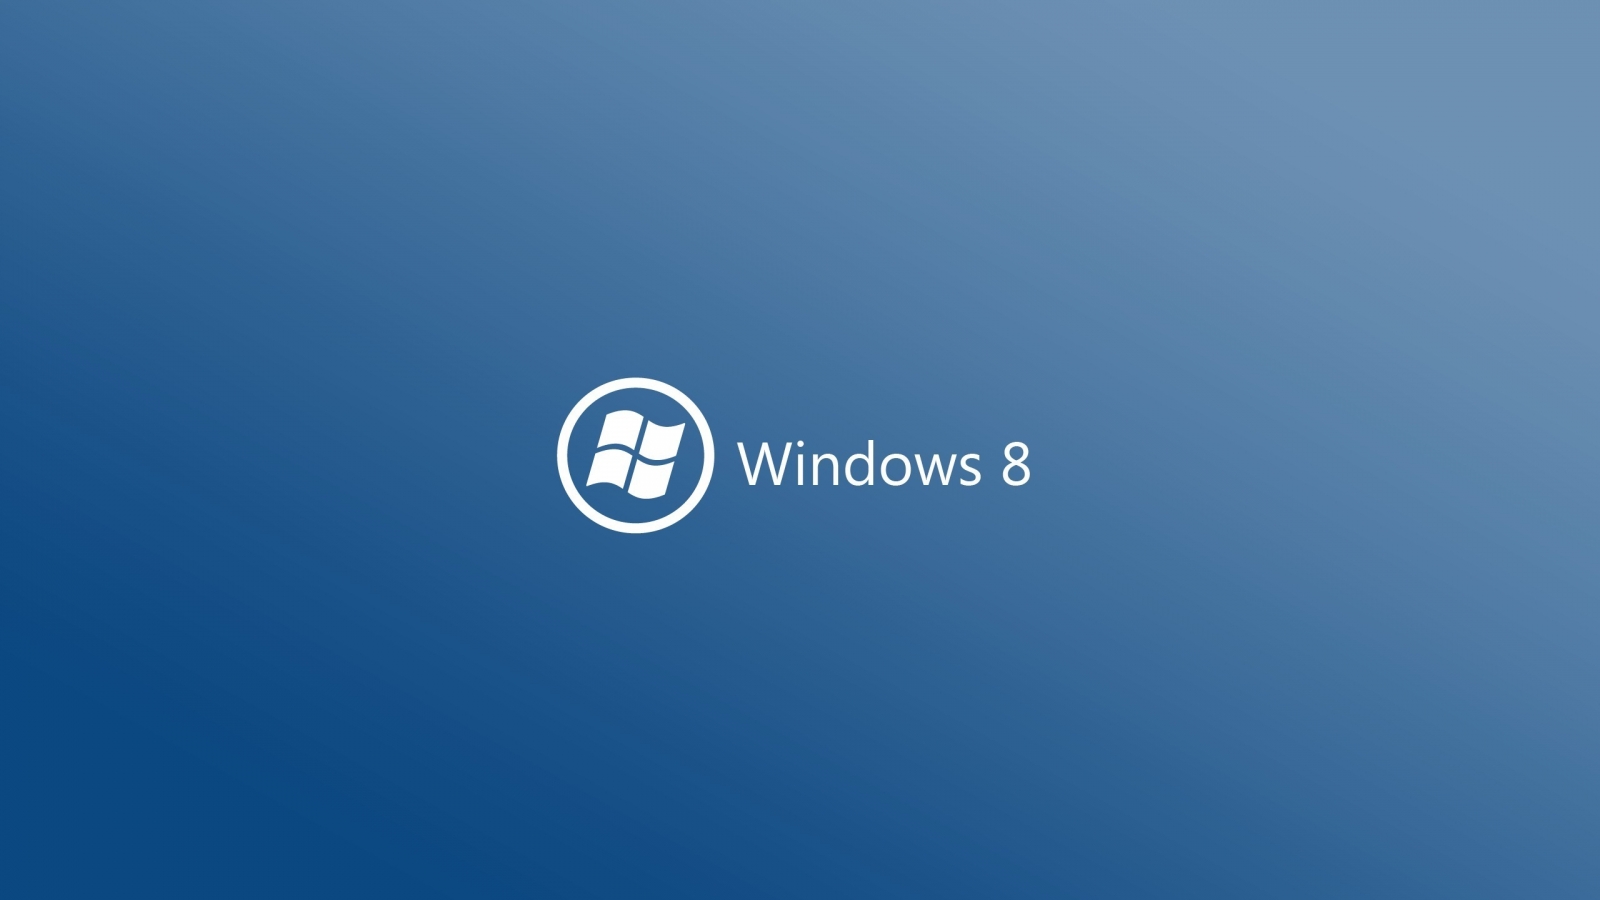 Windows 8 Logo for 1600 x 900 HDTV resolution